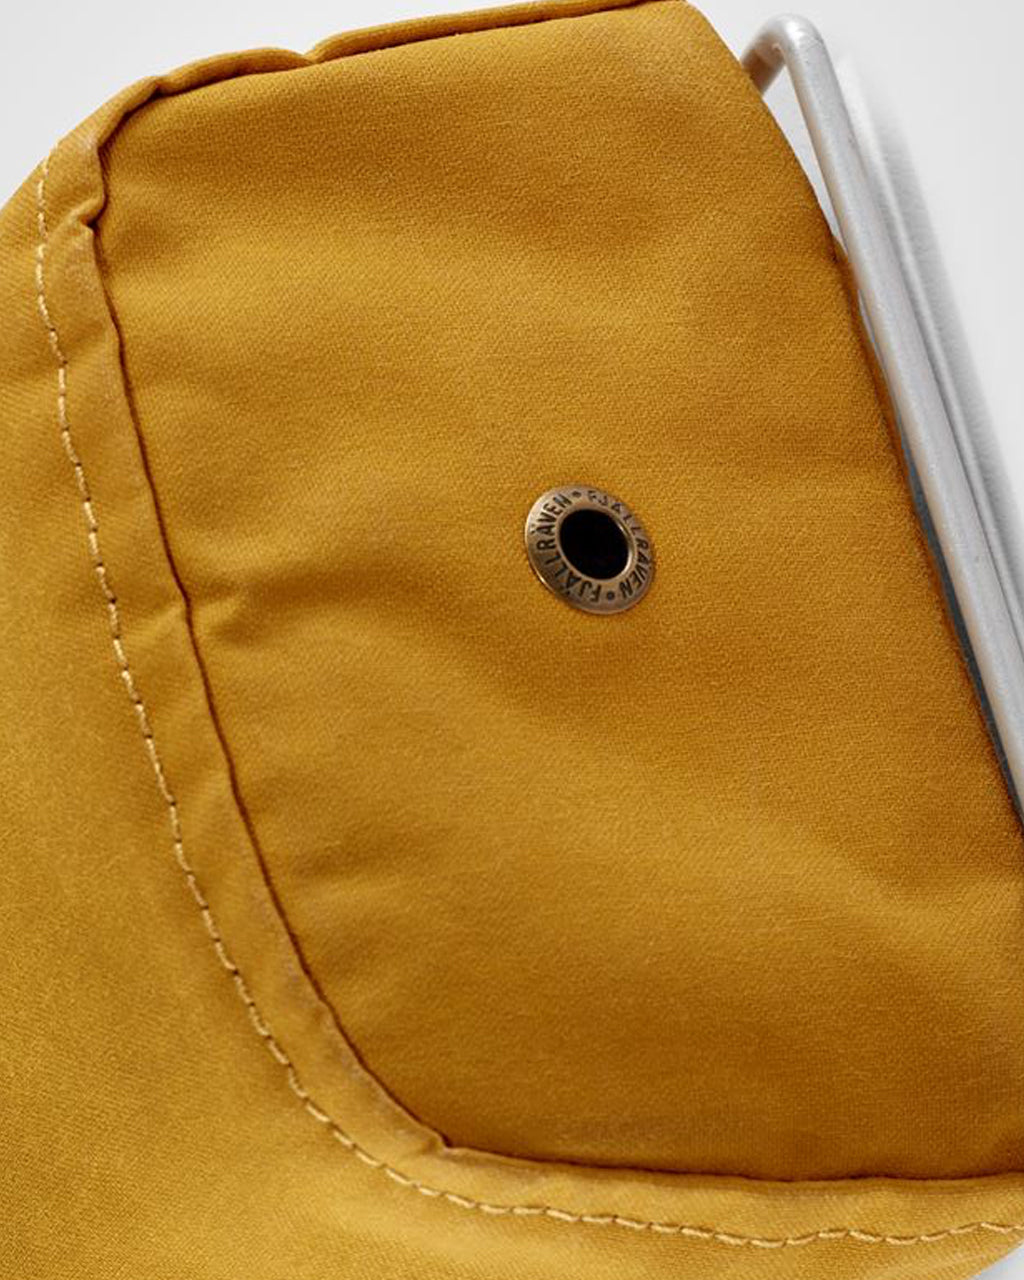 Close-up of Fjallraven Kanken Bottle Pocket's fabric and closure